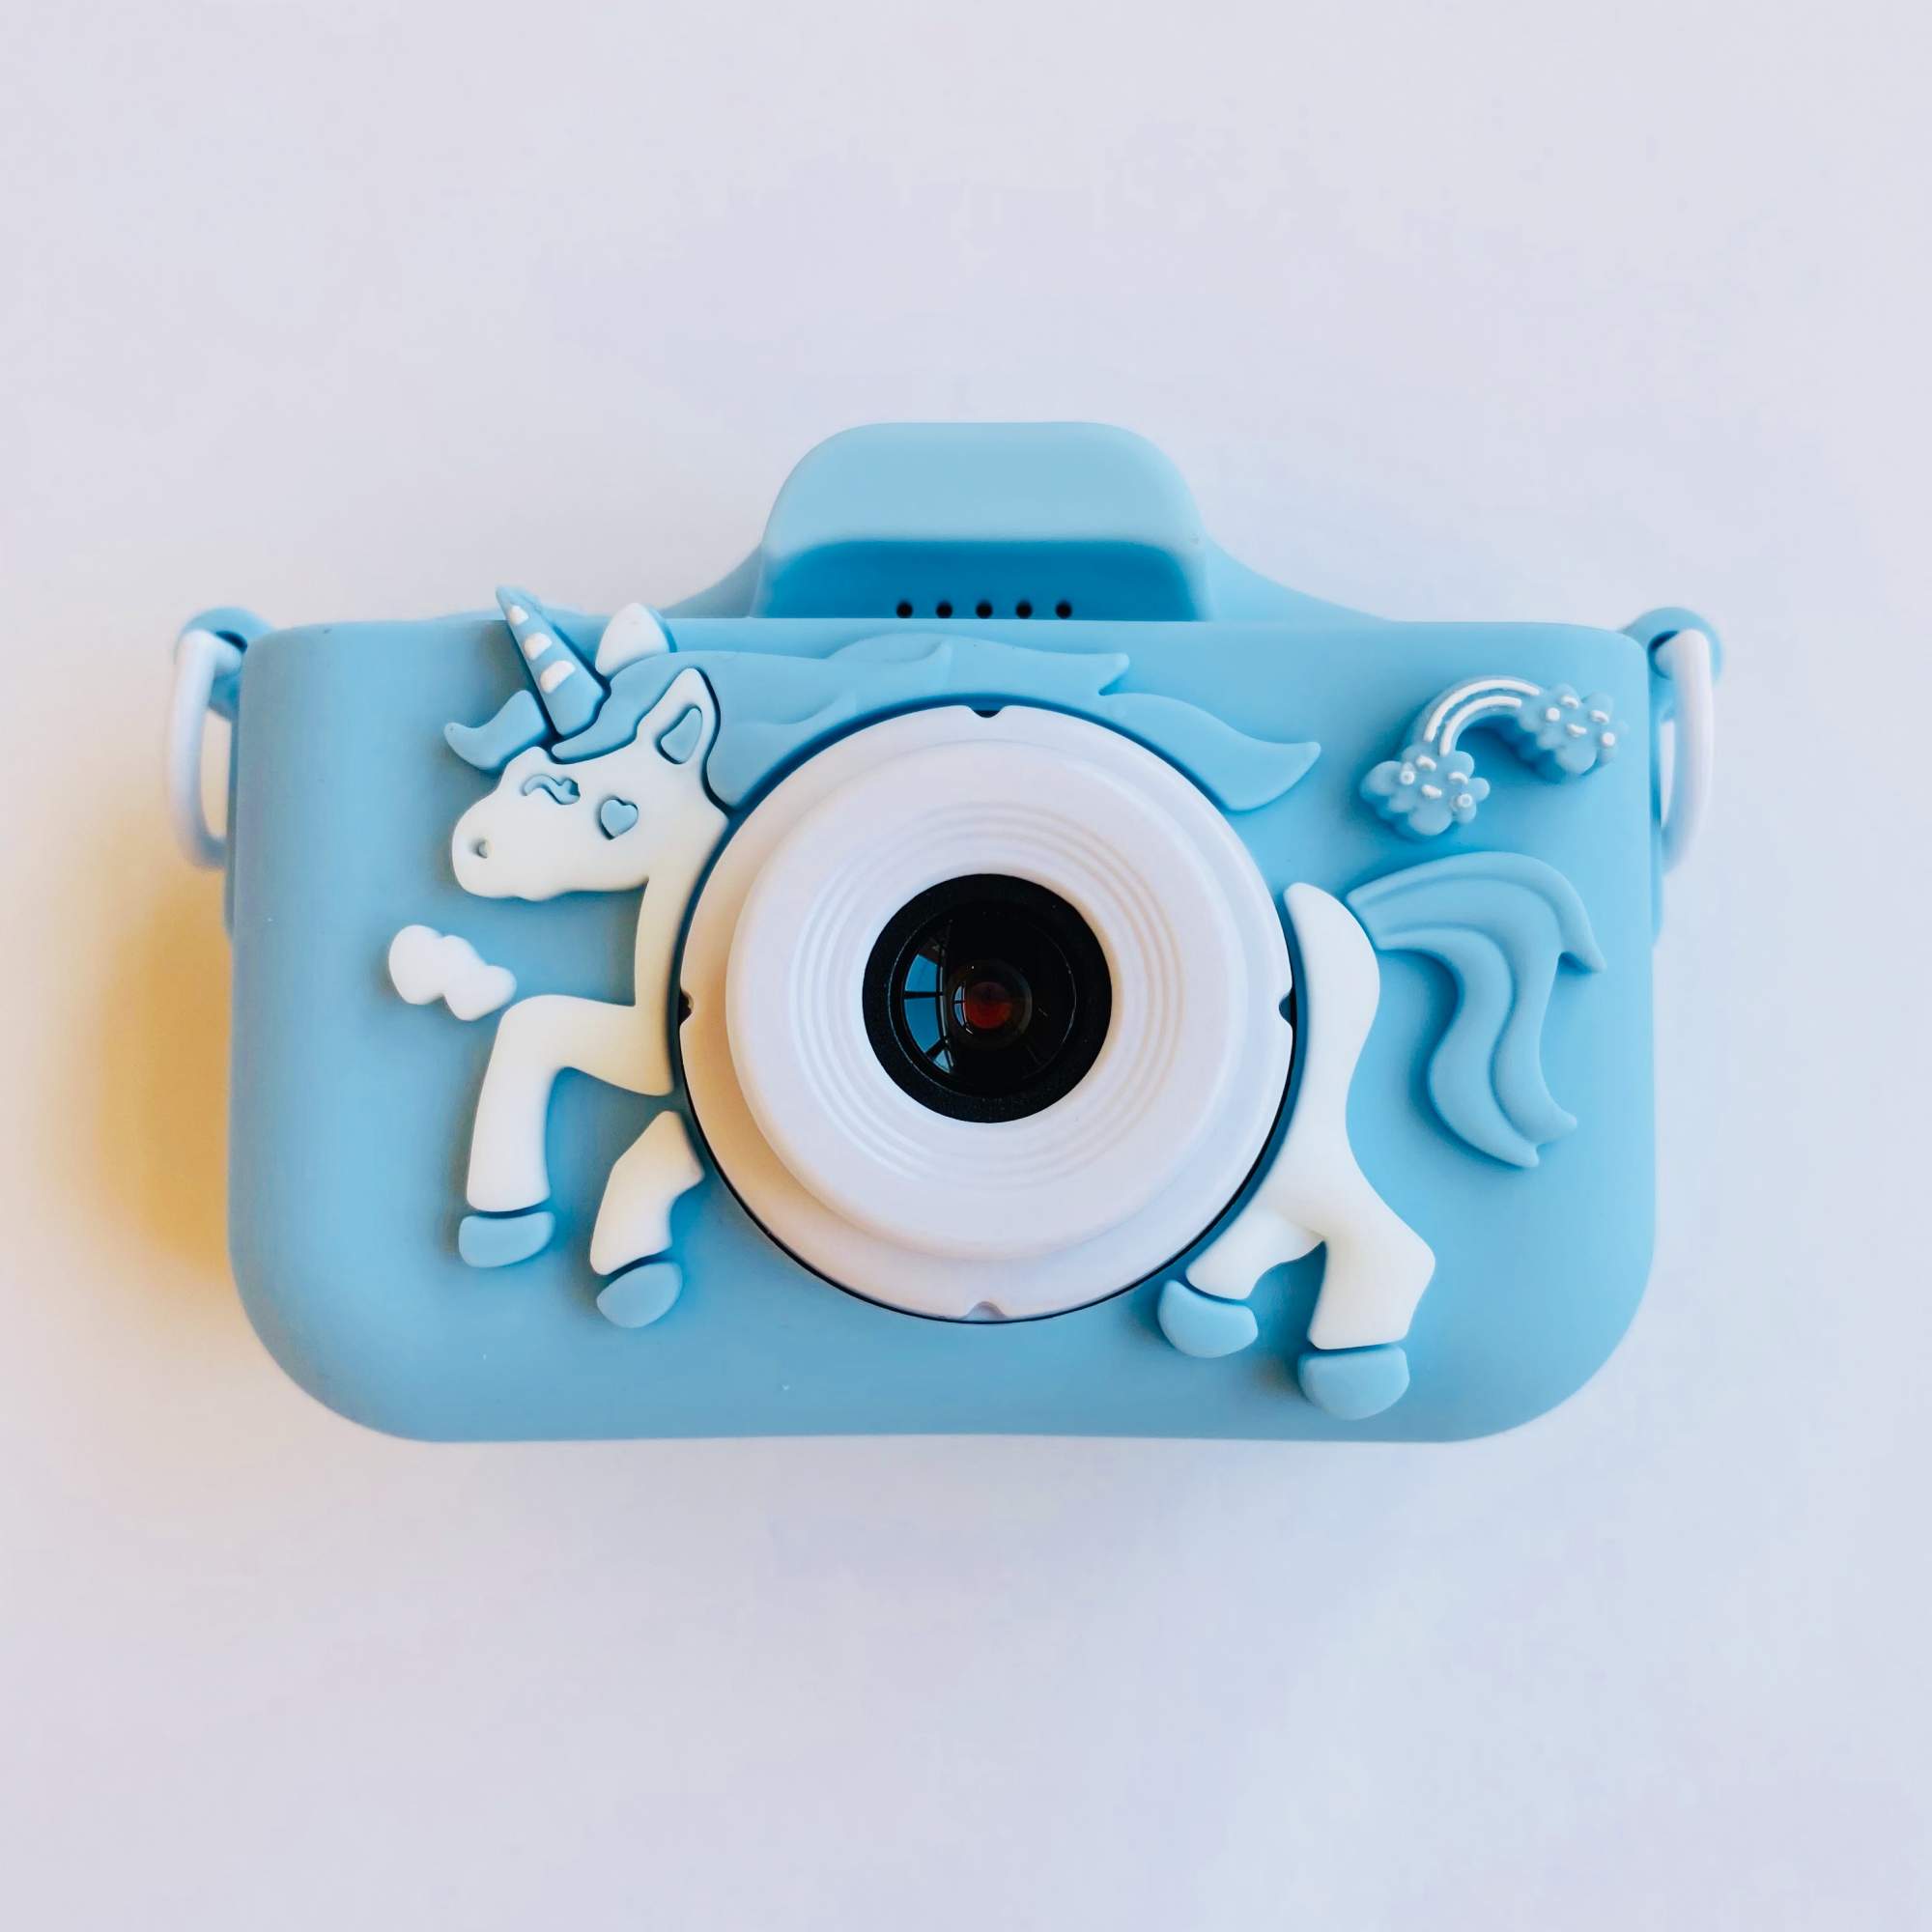 Детский цифровой фотоаппарат 48Mpx с играми и селфи камерой для мальчика Единорог голубой фотоаппарат со вспышкой и селфи камерой бульдог 46093 00116234